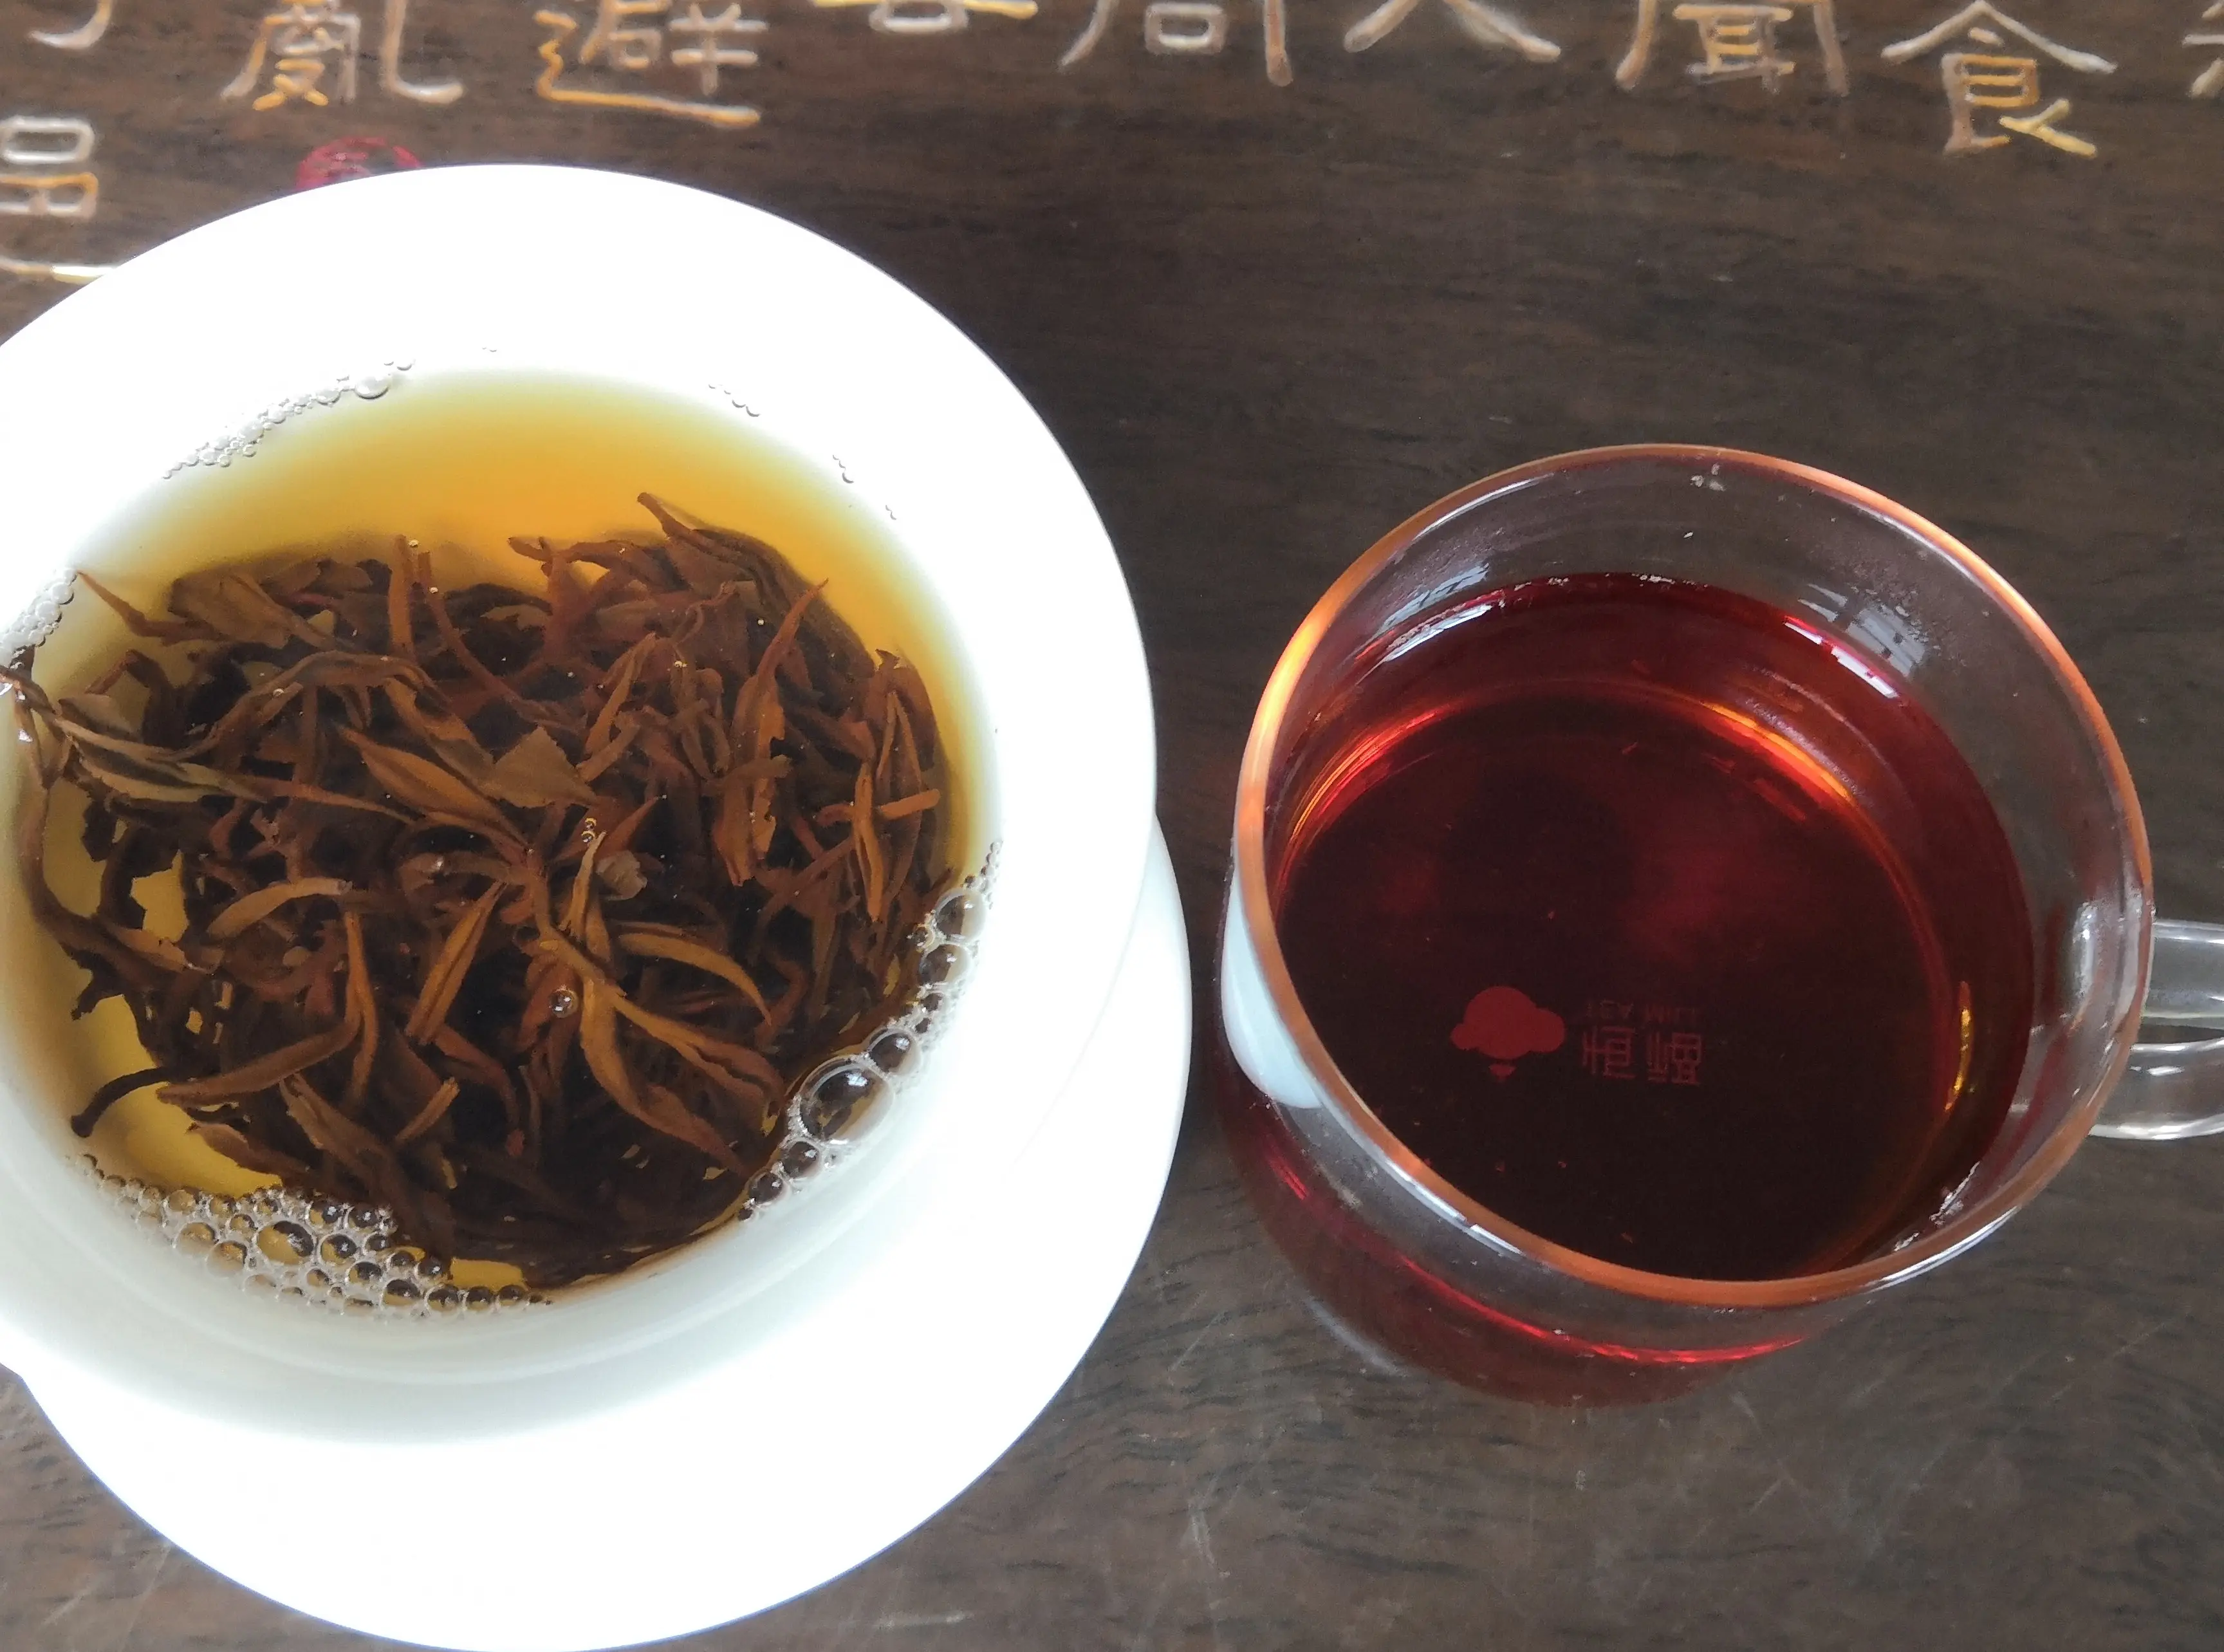 यूरोपीय संघ के मानक कीमत keemun काली चाय गर्म बिक्री चीनी काली चाय ढीला Keemun काली चाय